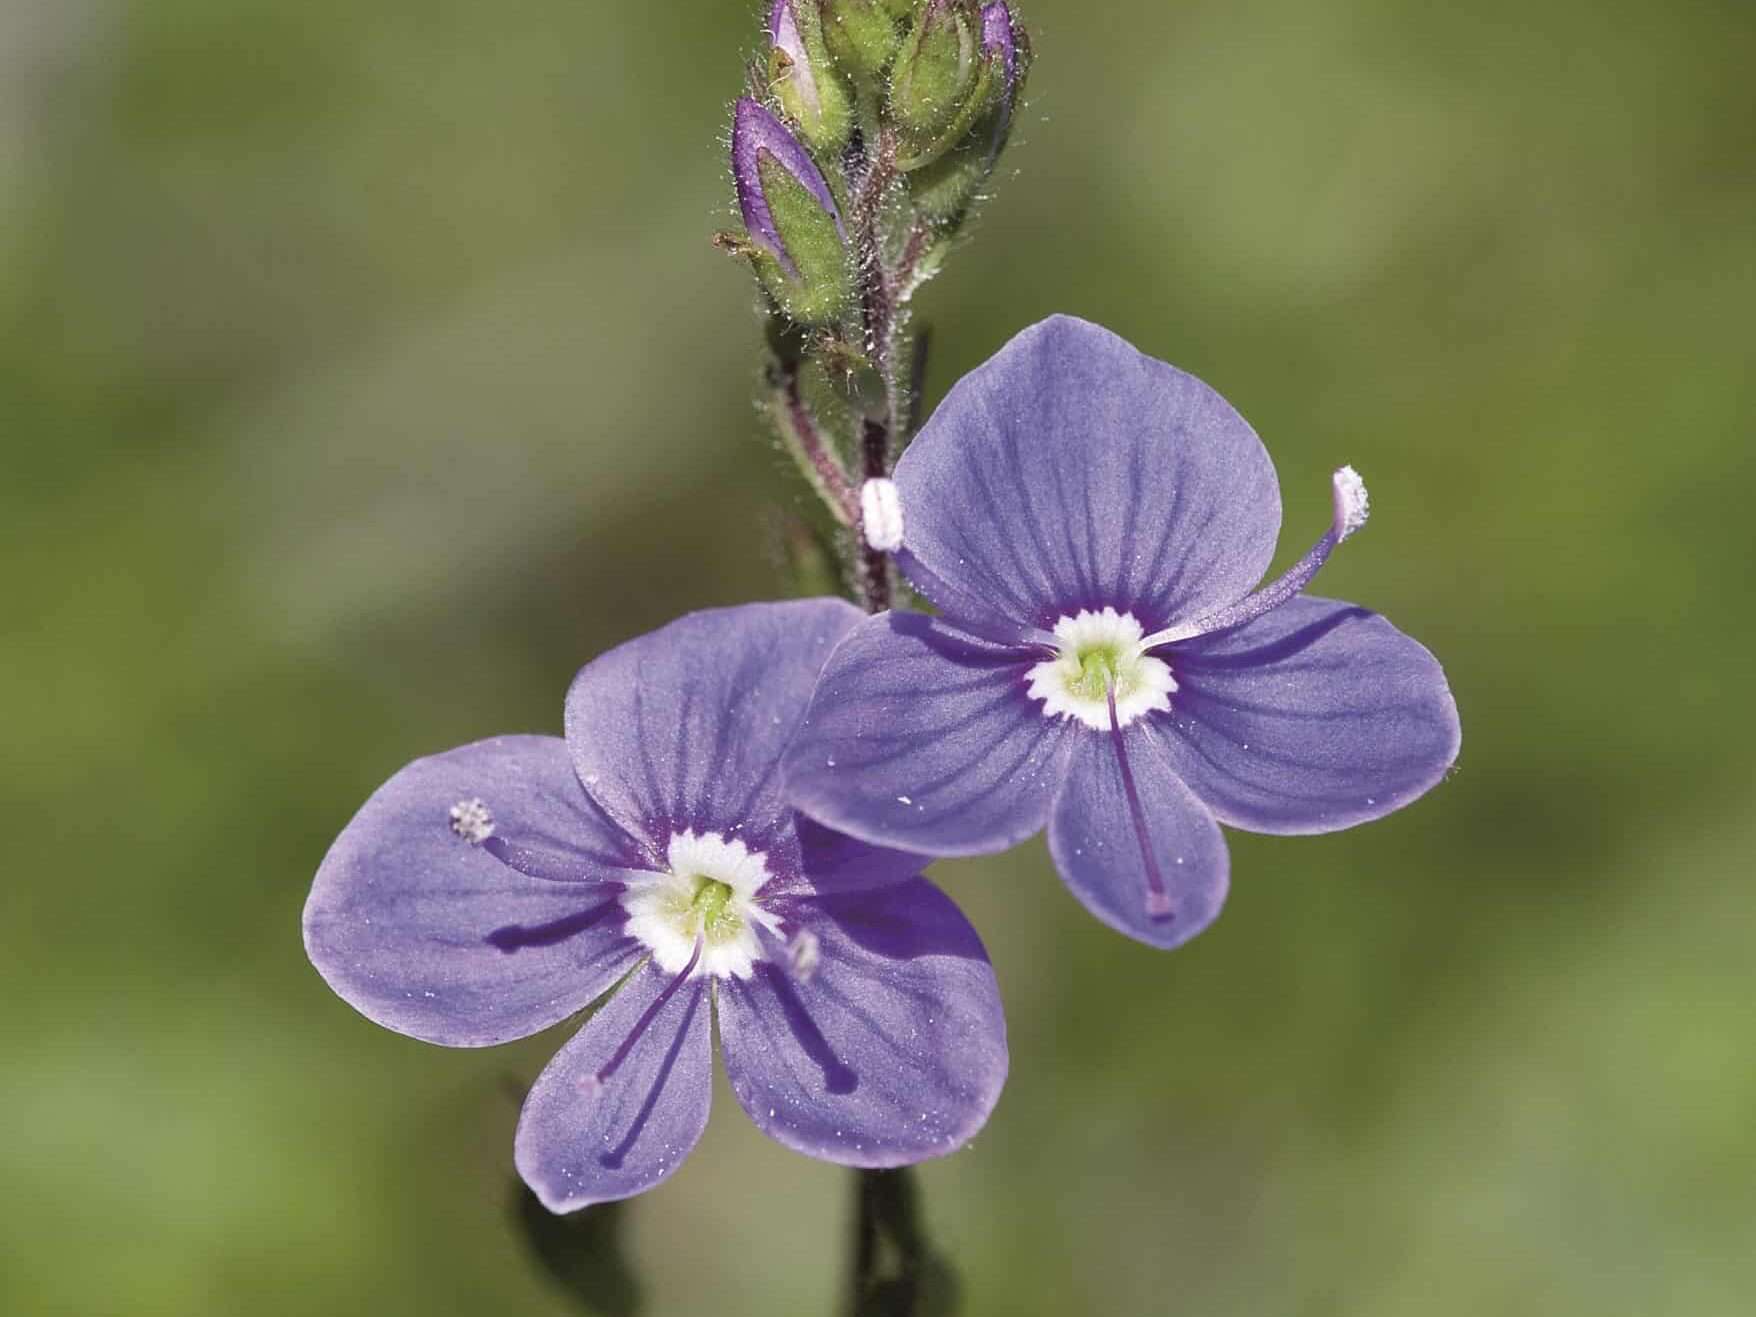 Two purple flowers